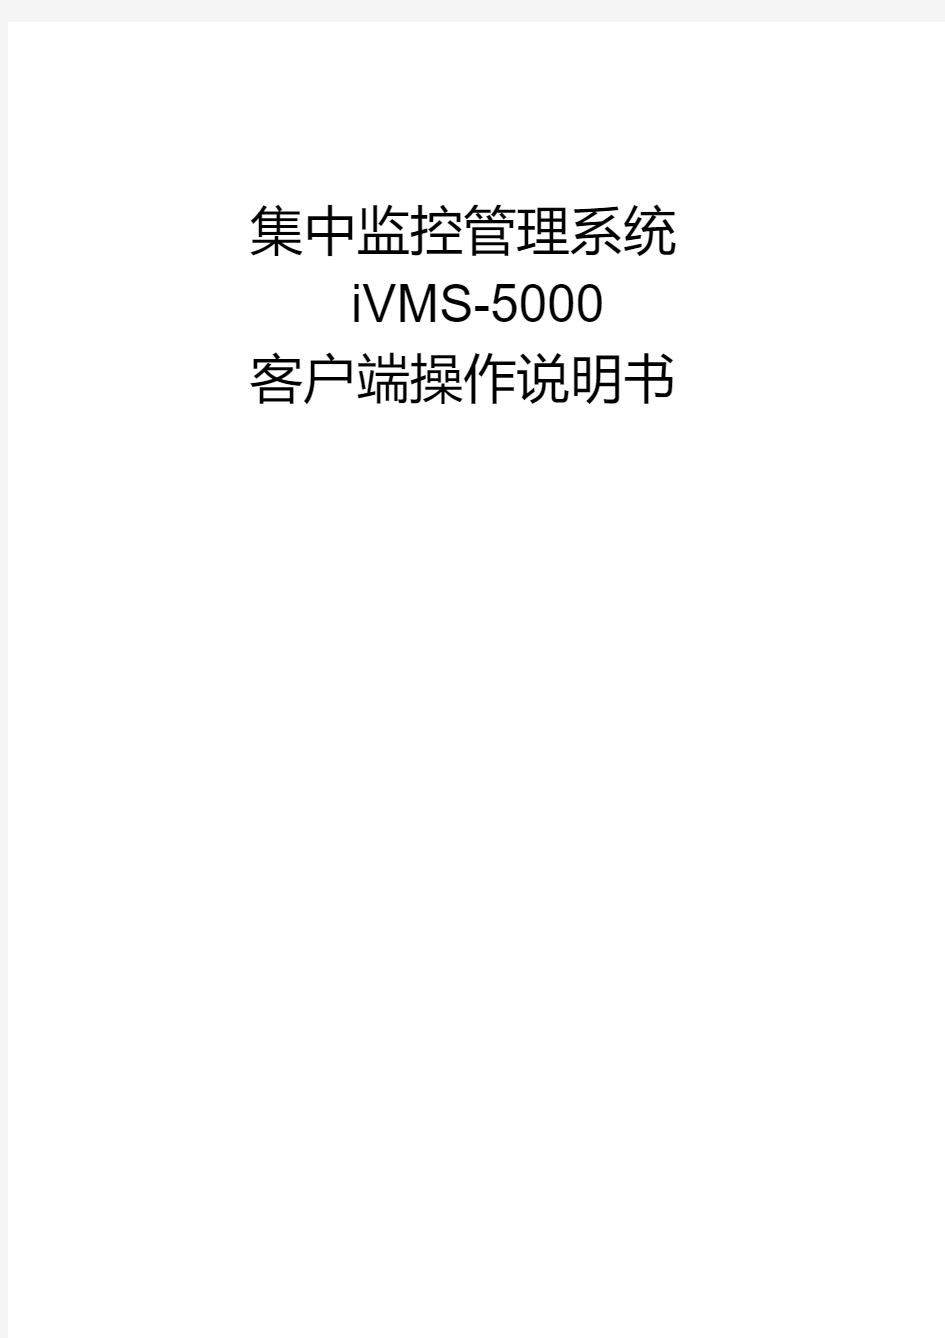 海康威视CS集中监控管理系统iVMS-5000操作说明书.pdf